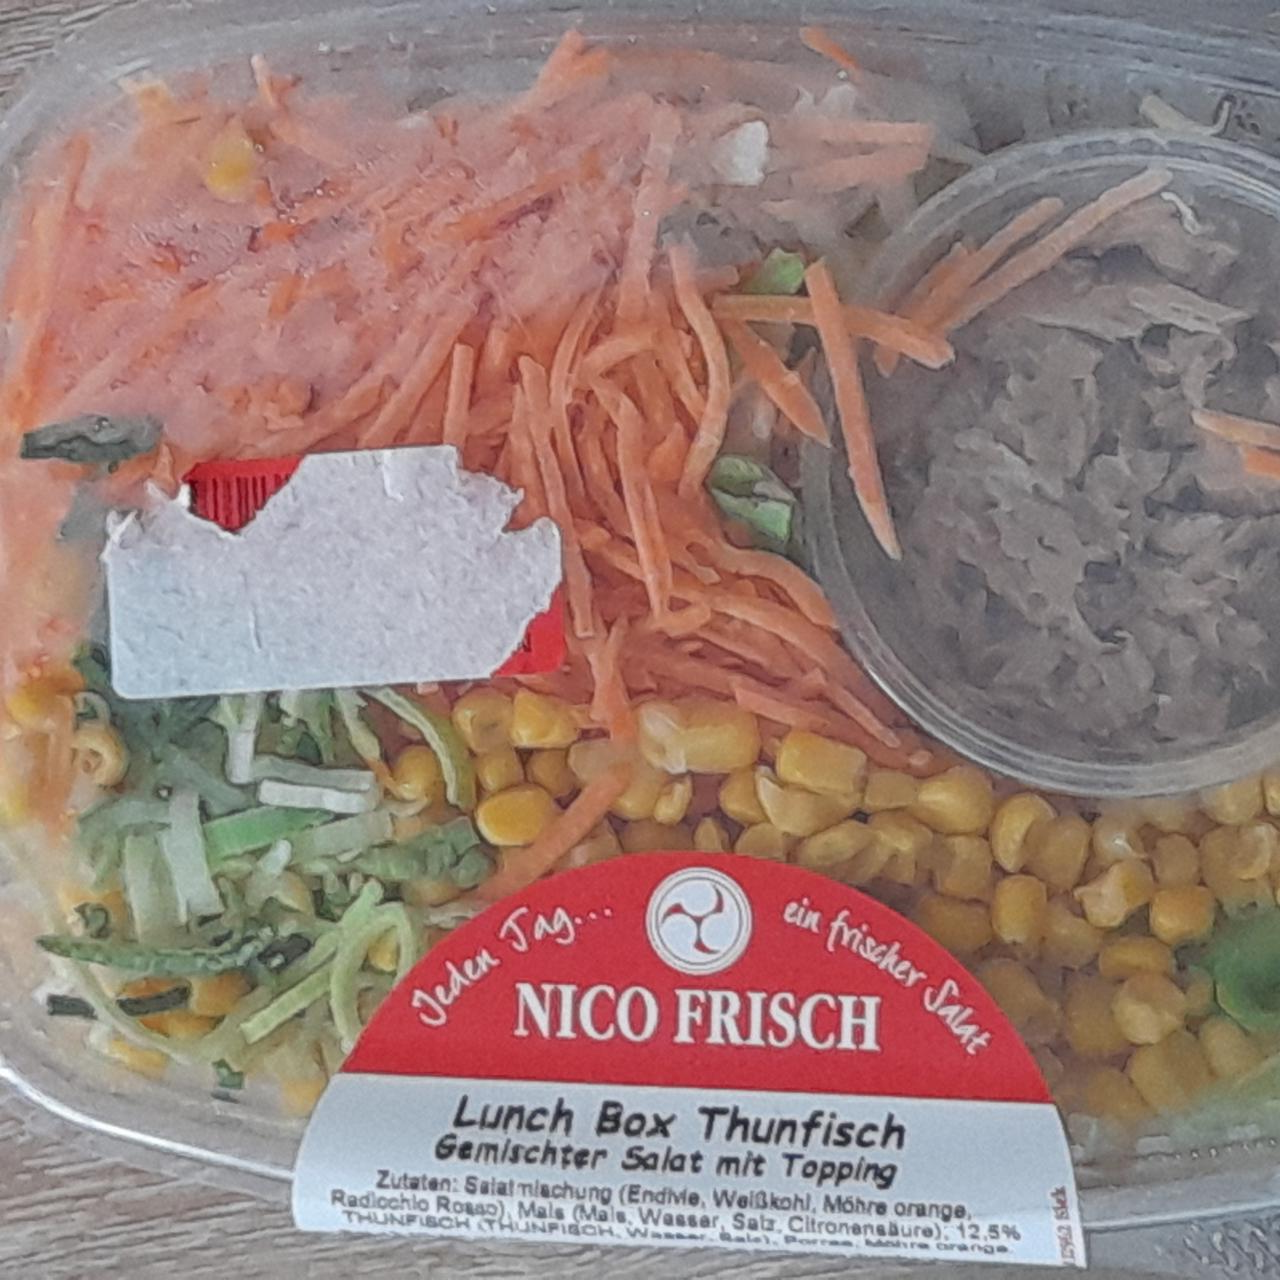 Fotografie - Lunch Box Thunfisch Nico Frisch